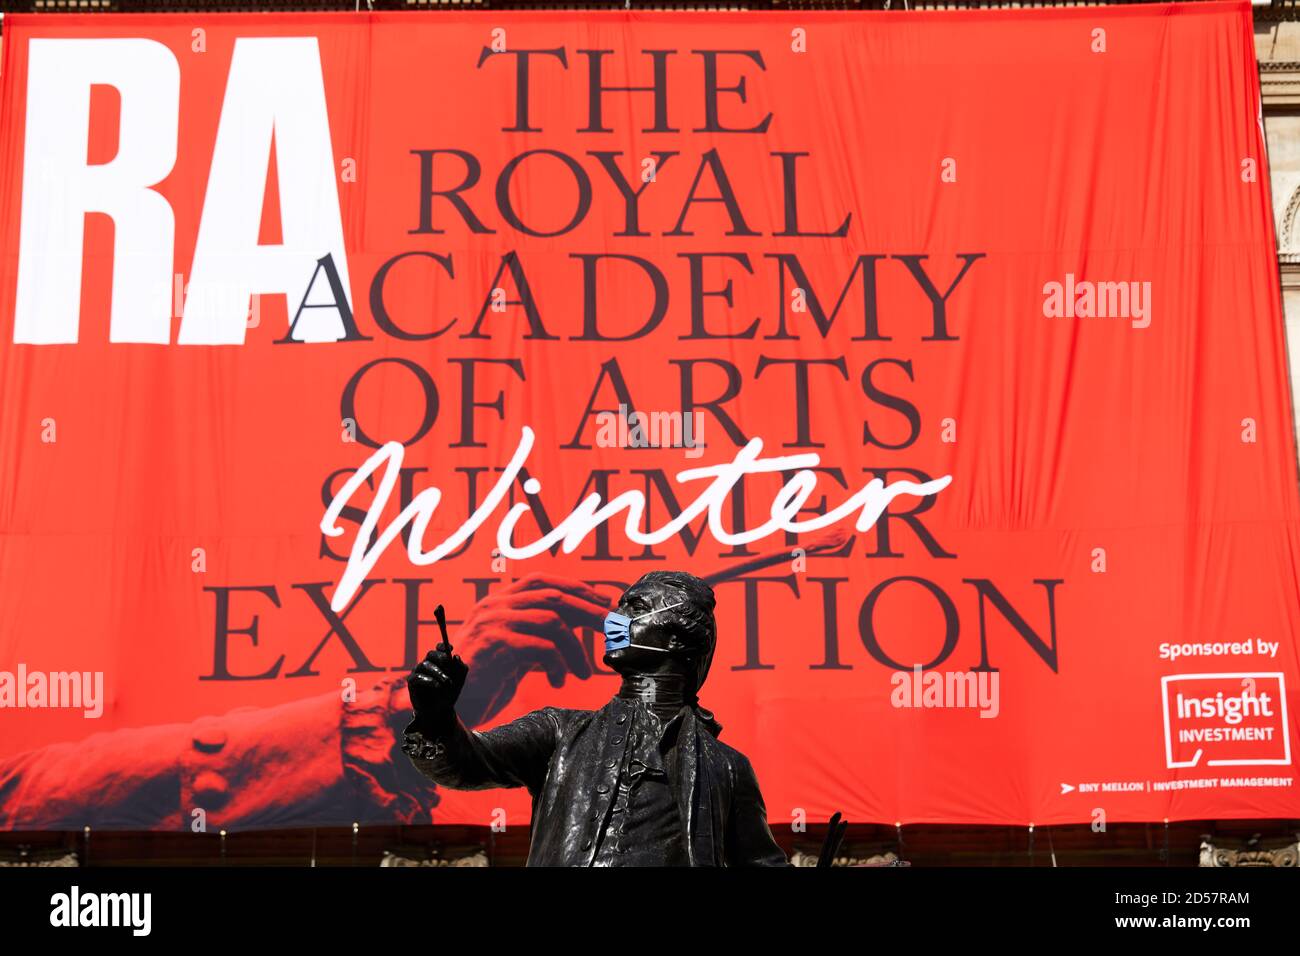 London, Großbritannien. - 5. Oktober 2020: Eine maskierte Statue vor einem Banner für die traditionelle Royal Academy Summer Exhibition, die wegen der Coronavirus-Pandemie bis Oktober verschoben wurde. Stockfoto